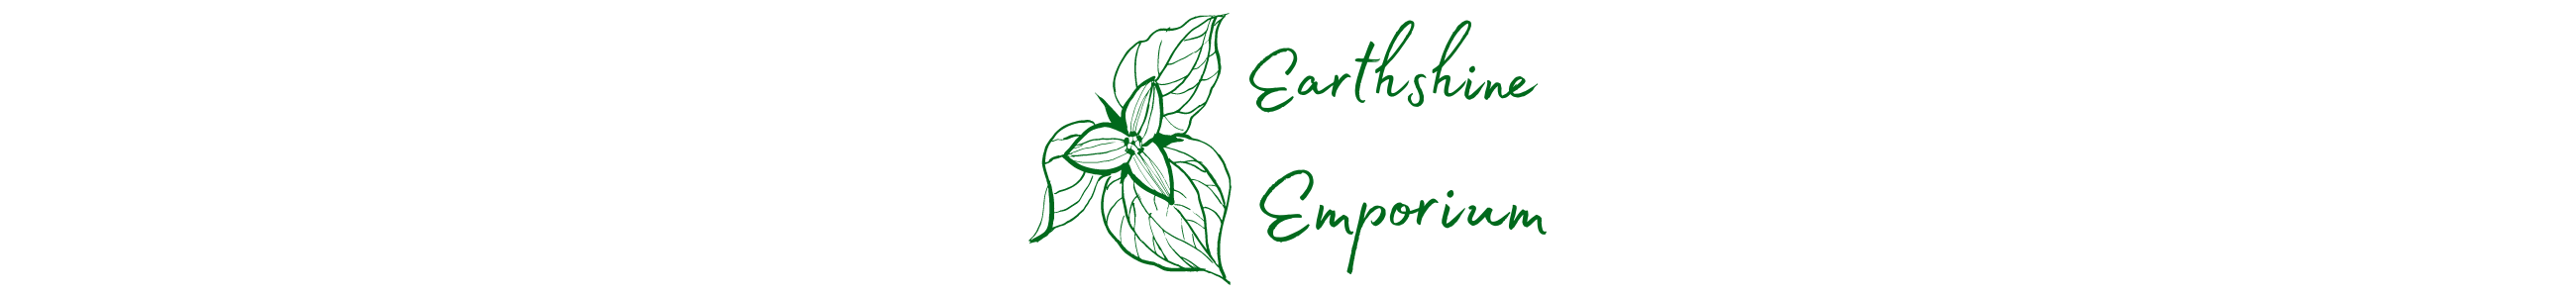 Earthshine Emporium